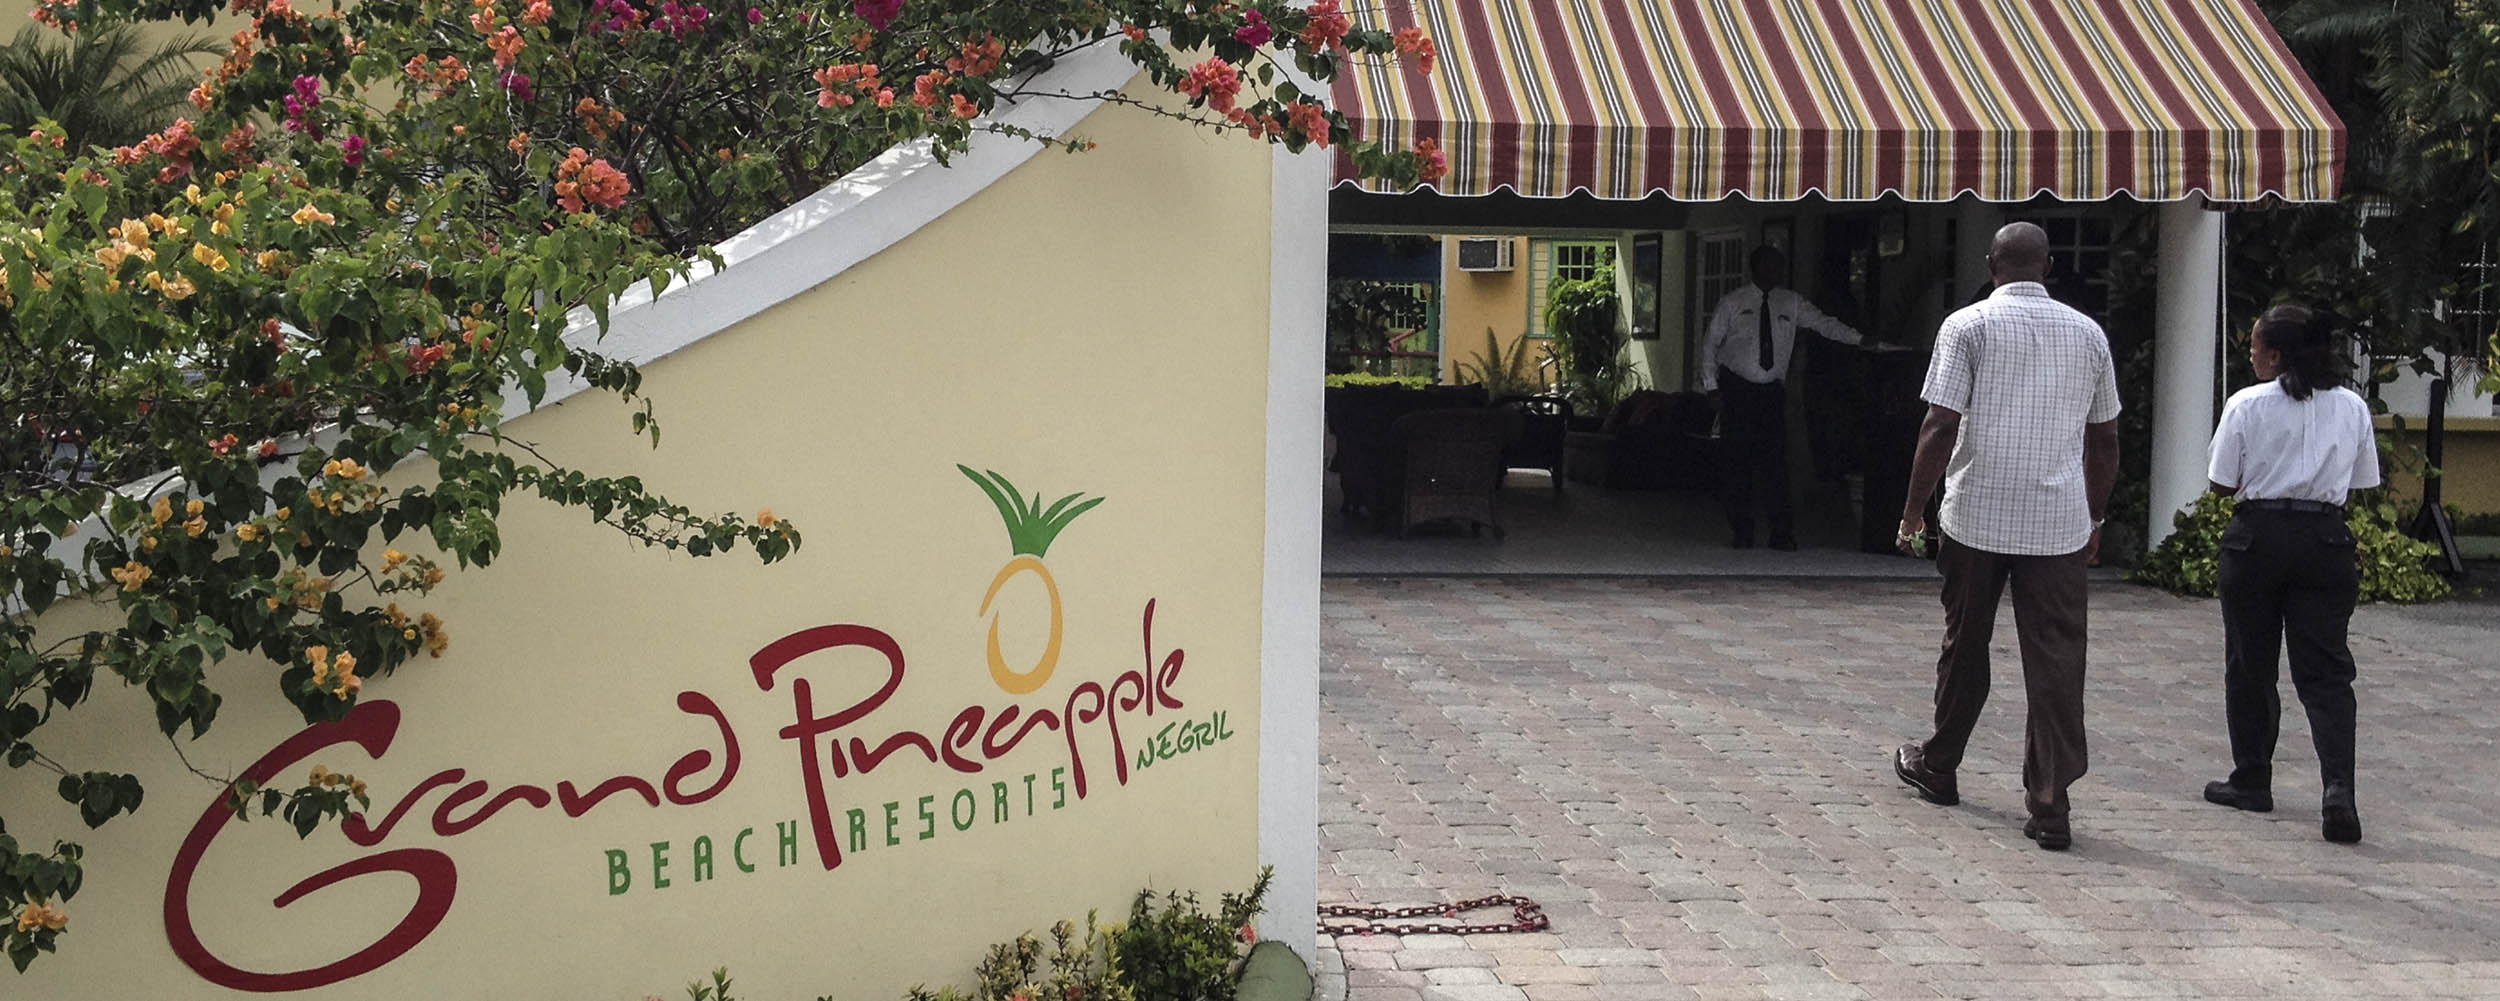 Grand Pineapple Beach Resort - Negril Jamaica